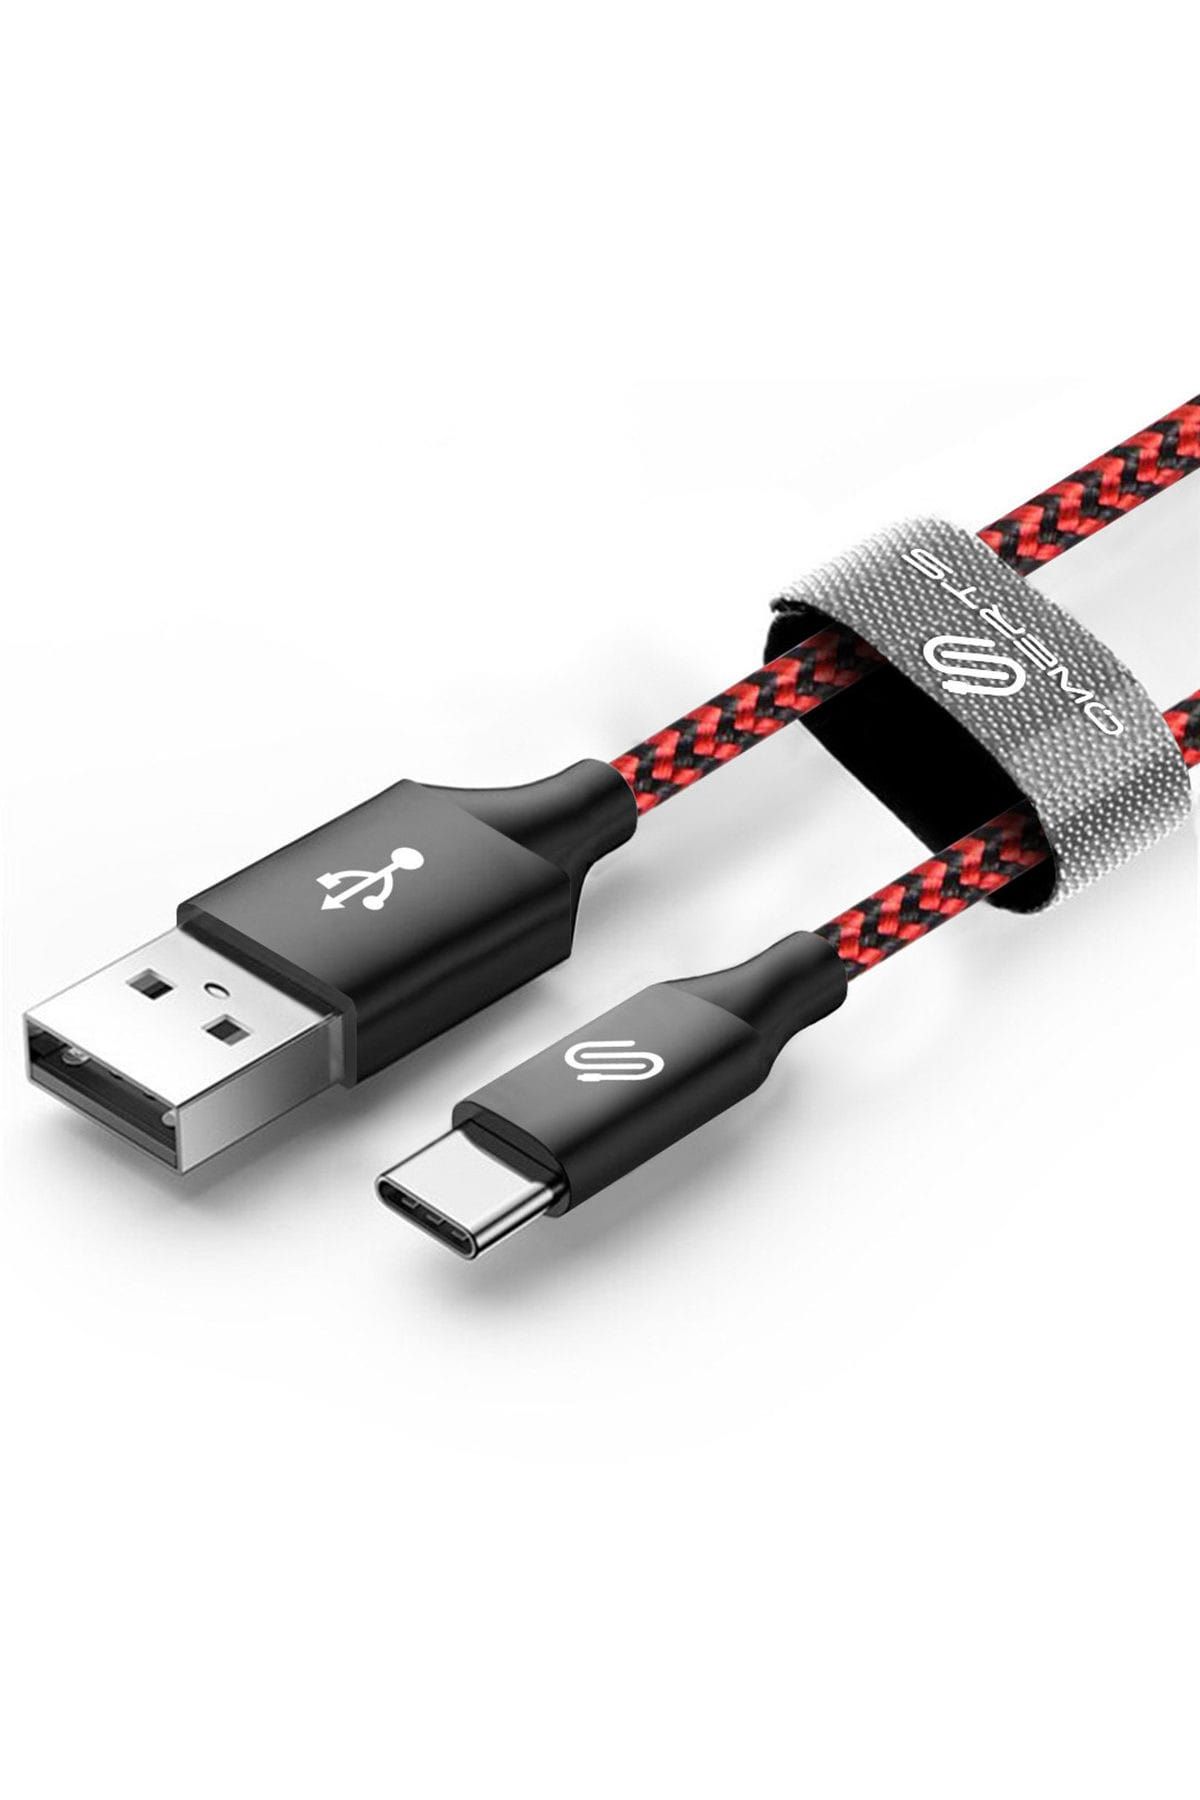 QWERTS USB Type-C Kablo - Type C Hızlı Şarj ve Data Kablosu Örgülü Kırmızı/Siyah 1 mt